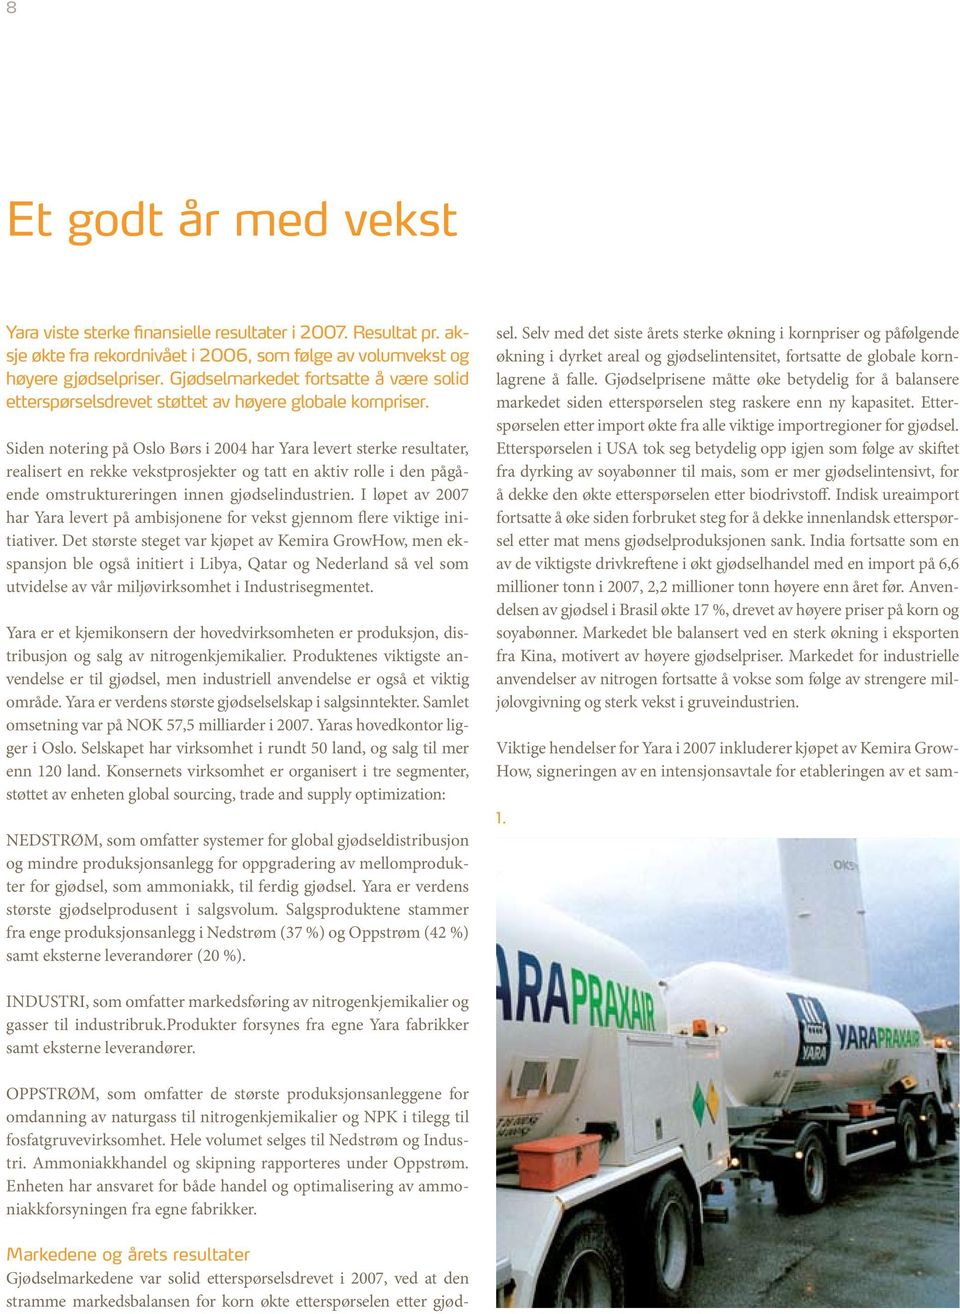 Siden notering på Oslo Børs i 2004 har Yara levert sterke resultater, realisert en rekke vekstprosjekter og tatt en aktiv rolle i den pågående omstruktureringen innen gjødselindustrien.